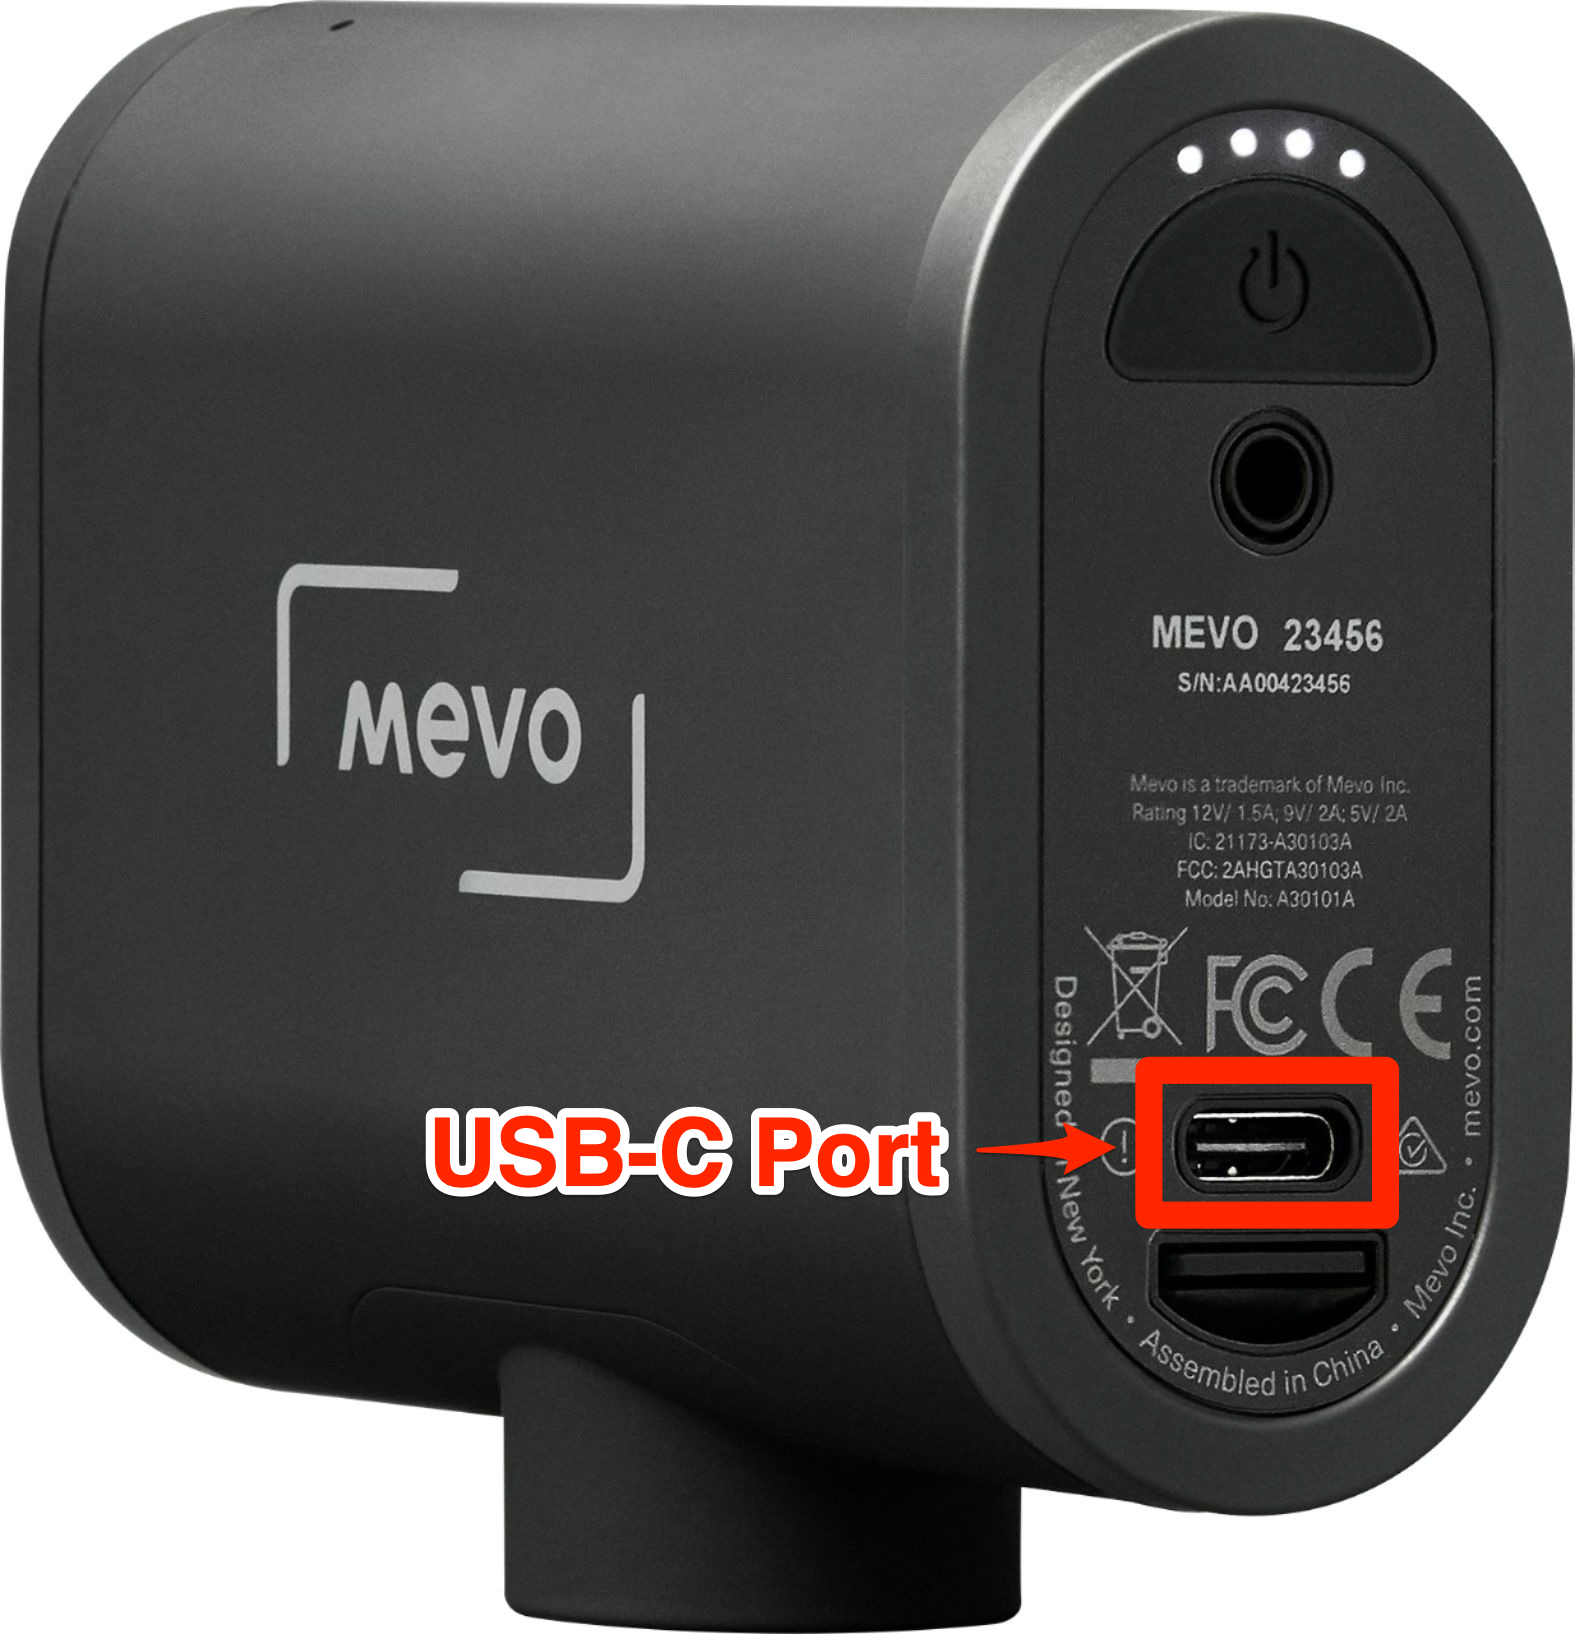 How Do I Charge/Power My Mevo Start? – Mevo Camera